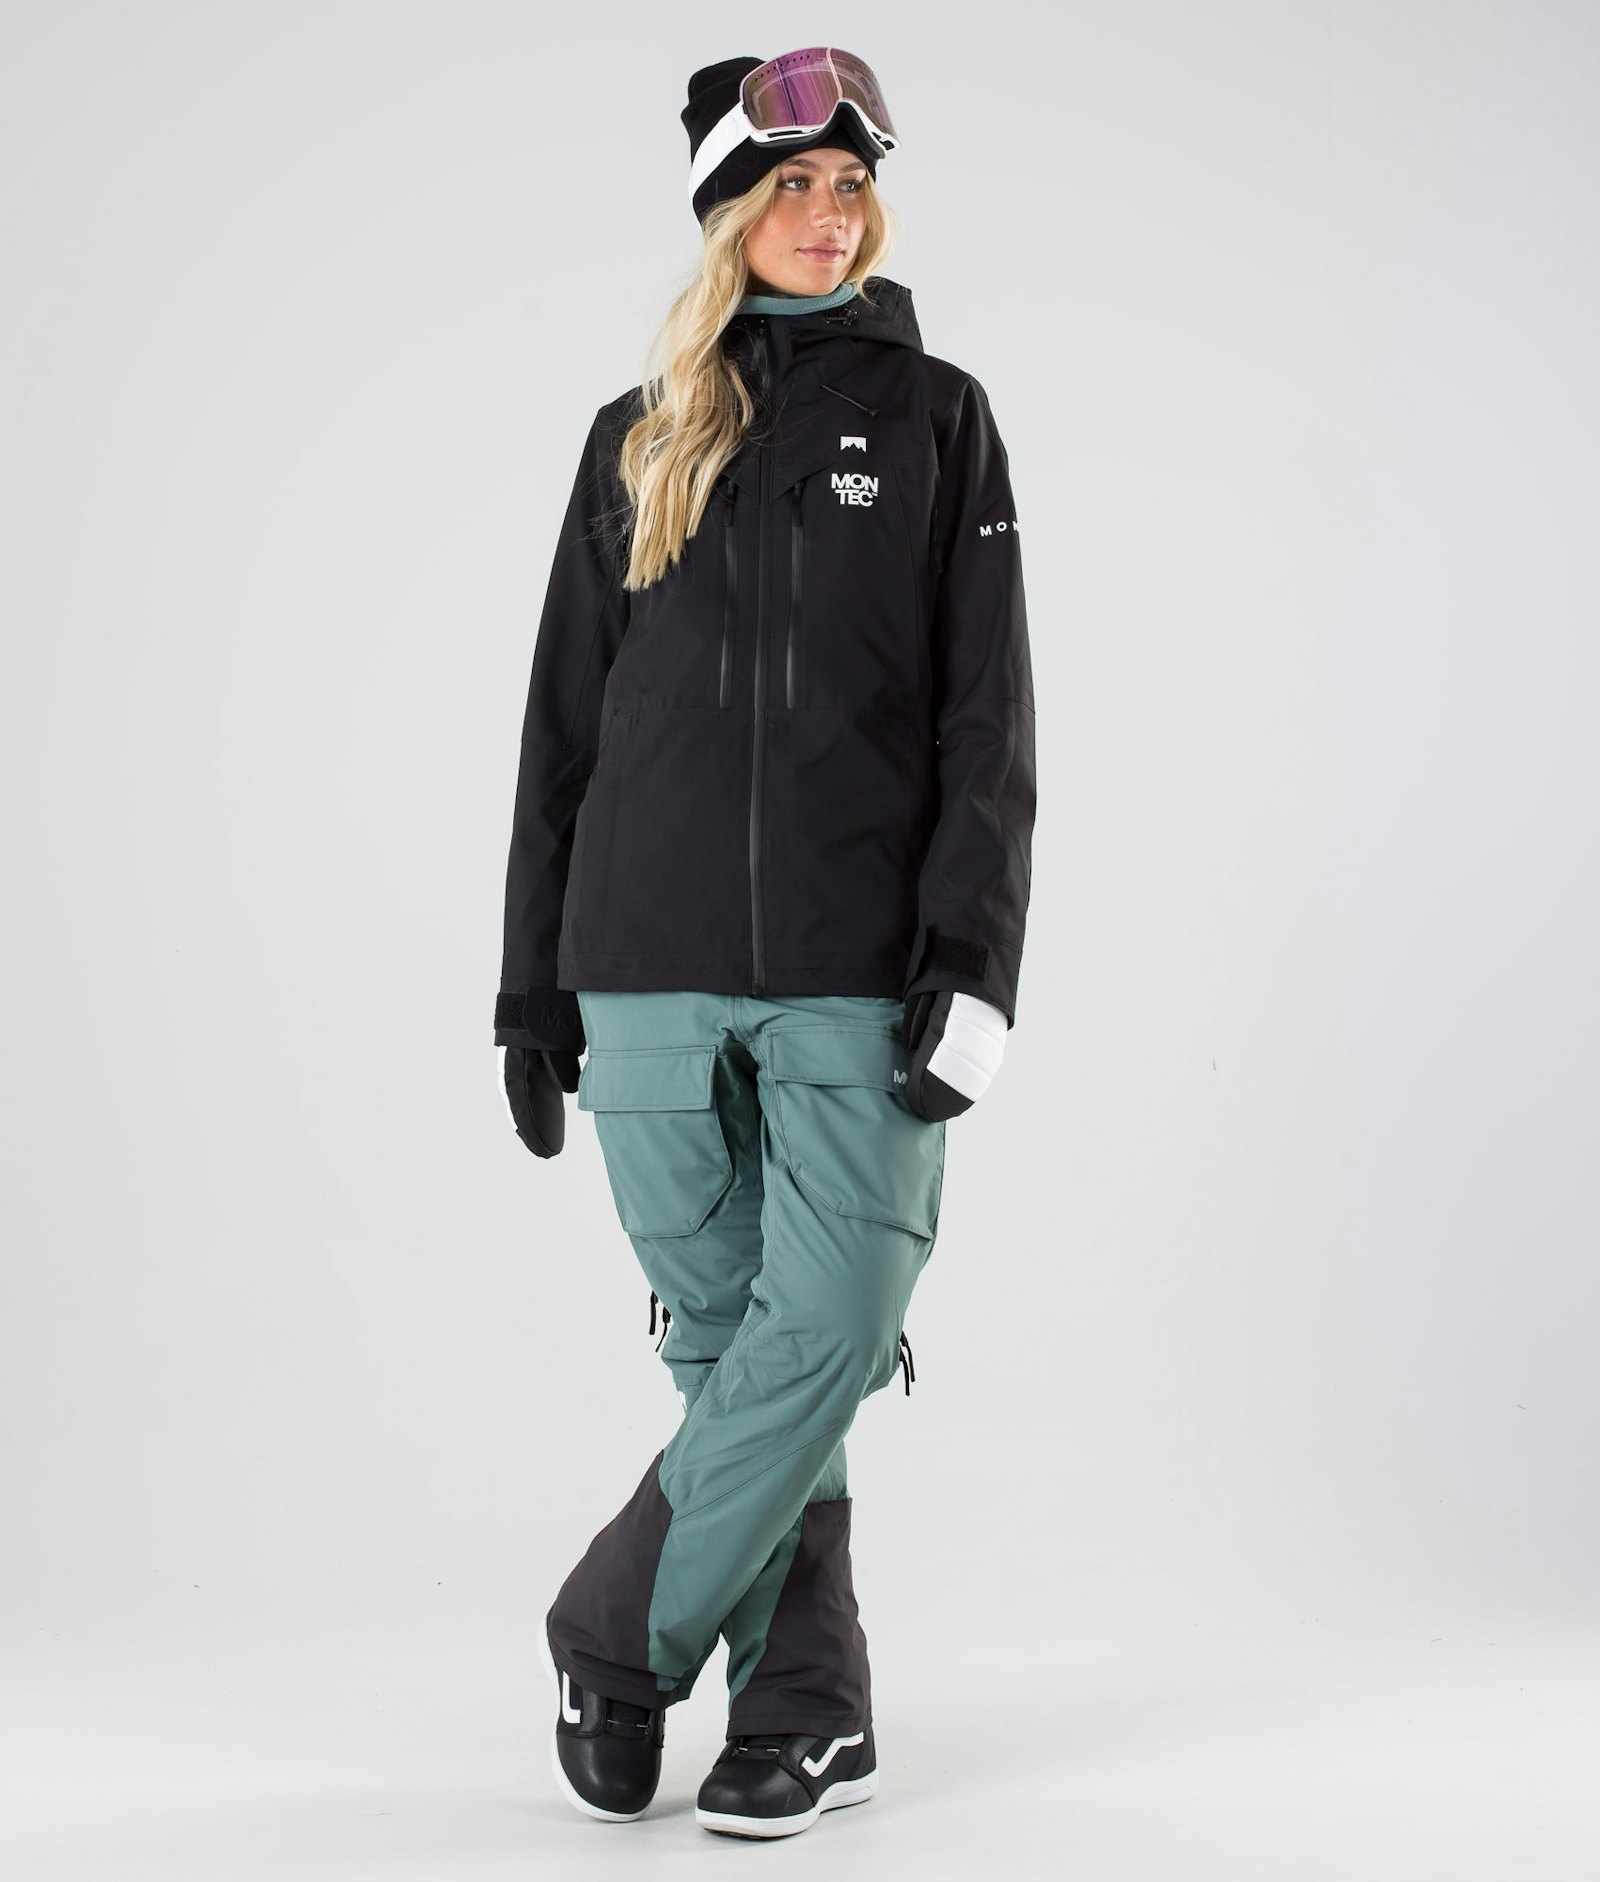 Moss W 2019 Veste Snowboard Femme Black